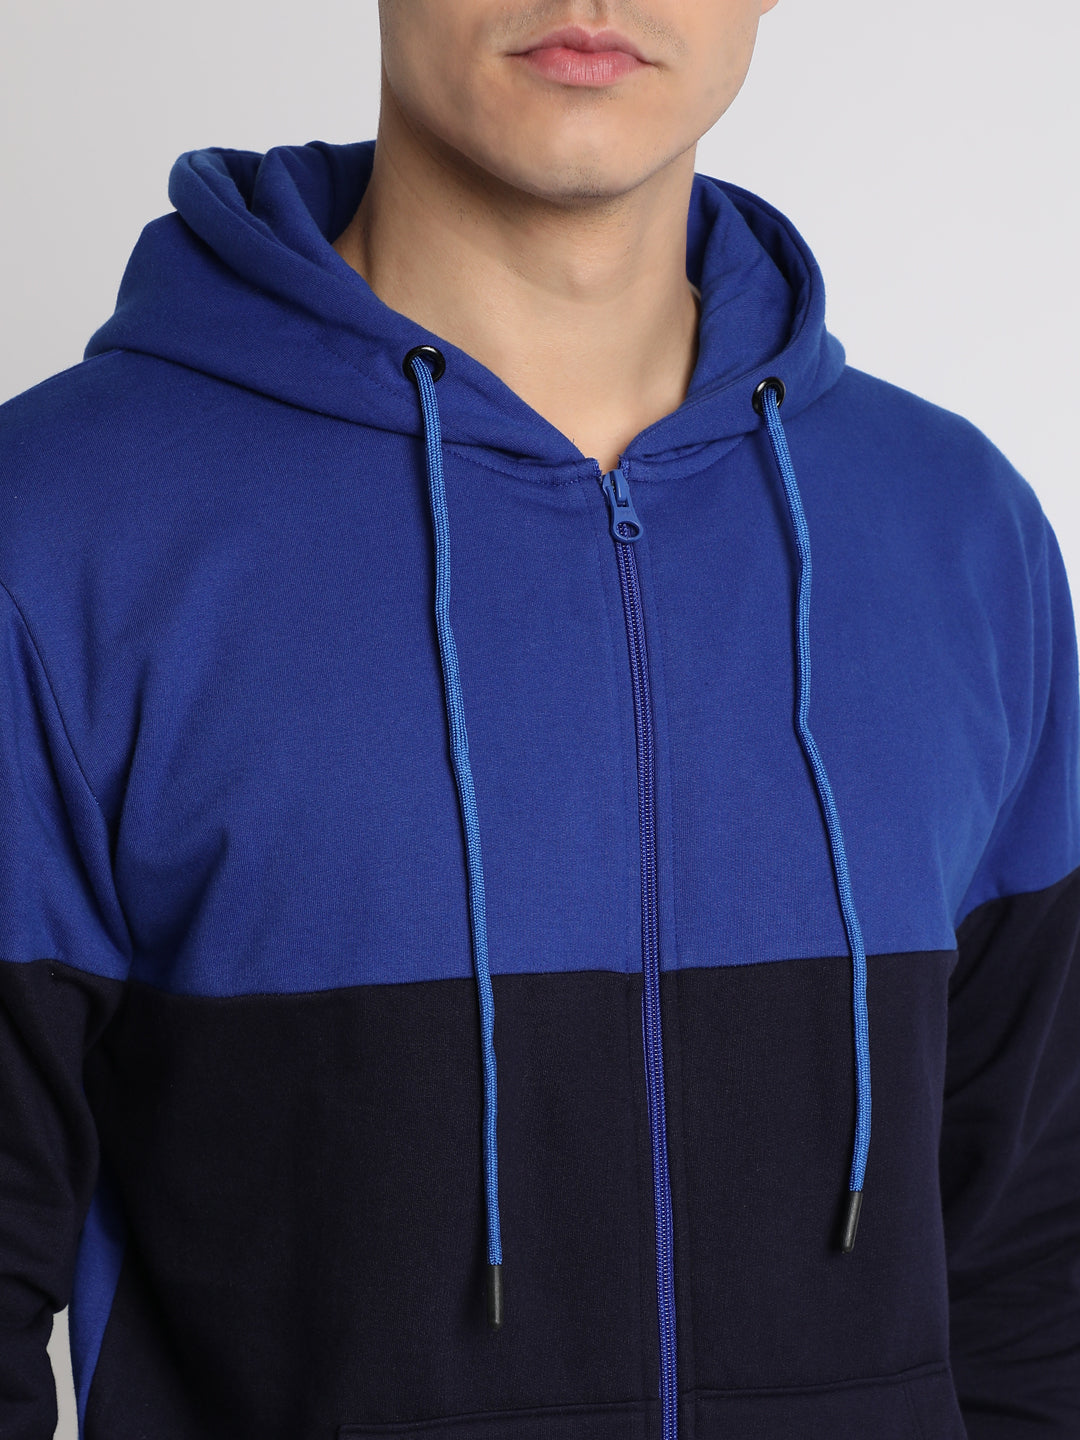 Dennis Lingo Men's Blue  Full Sleeves zipper hoodie Sweatshirt